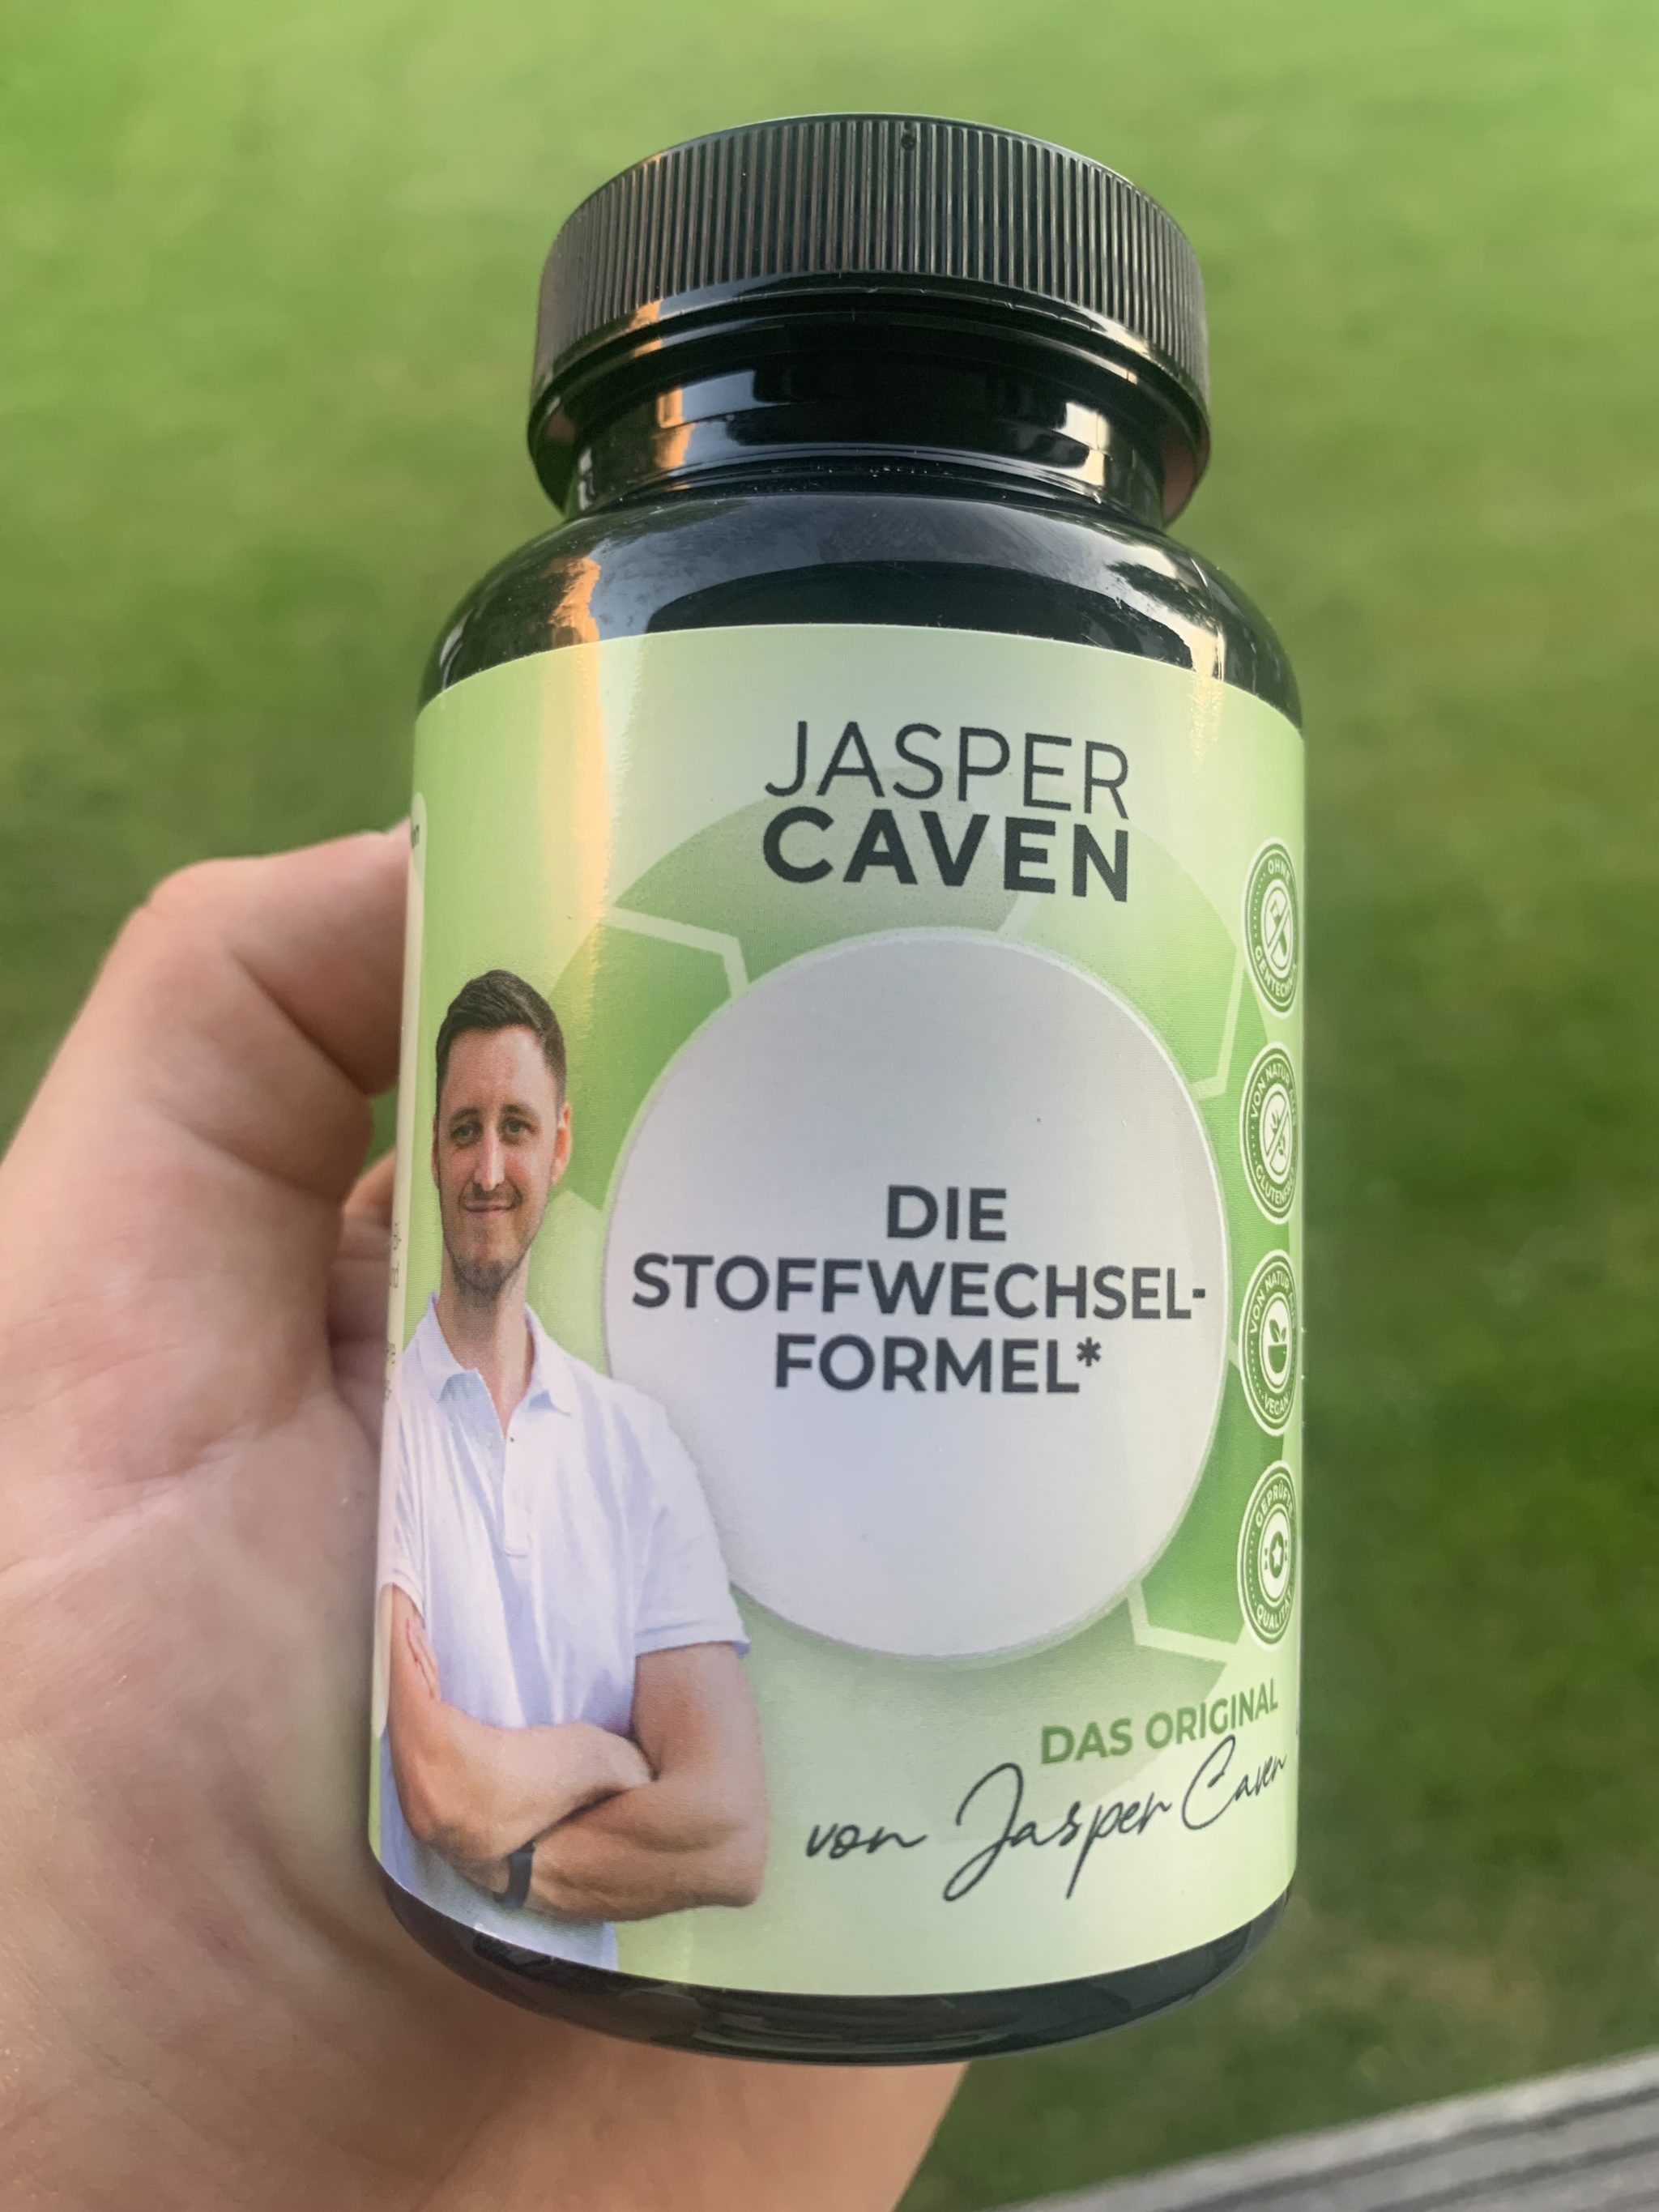 Jasper Caven Stoffwechsel Formel - Stoffwechselformel von Jasper Caven - Bestellt & getestet